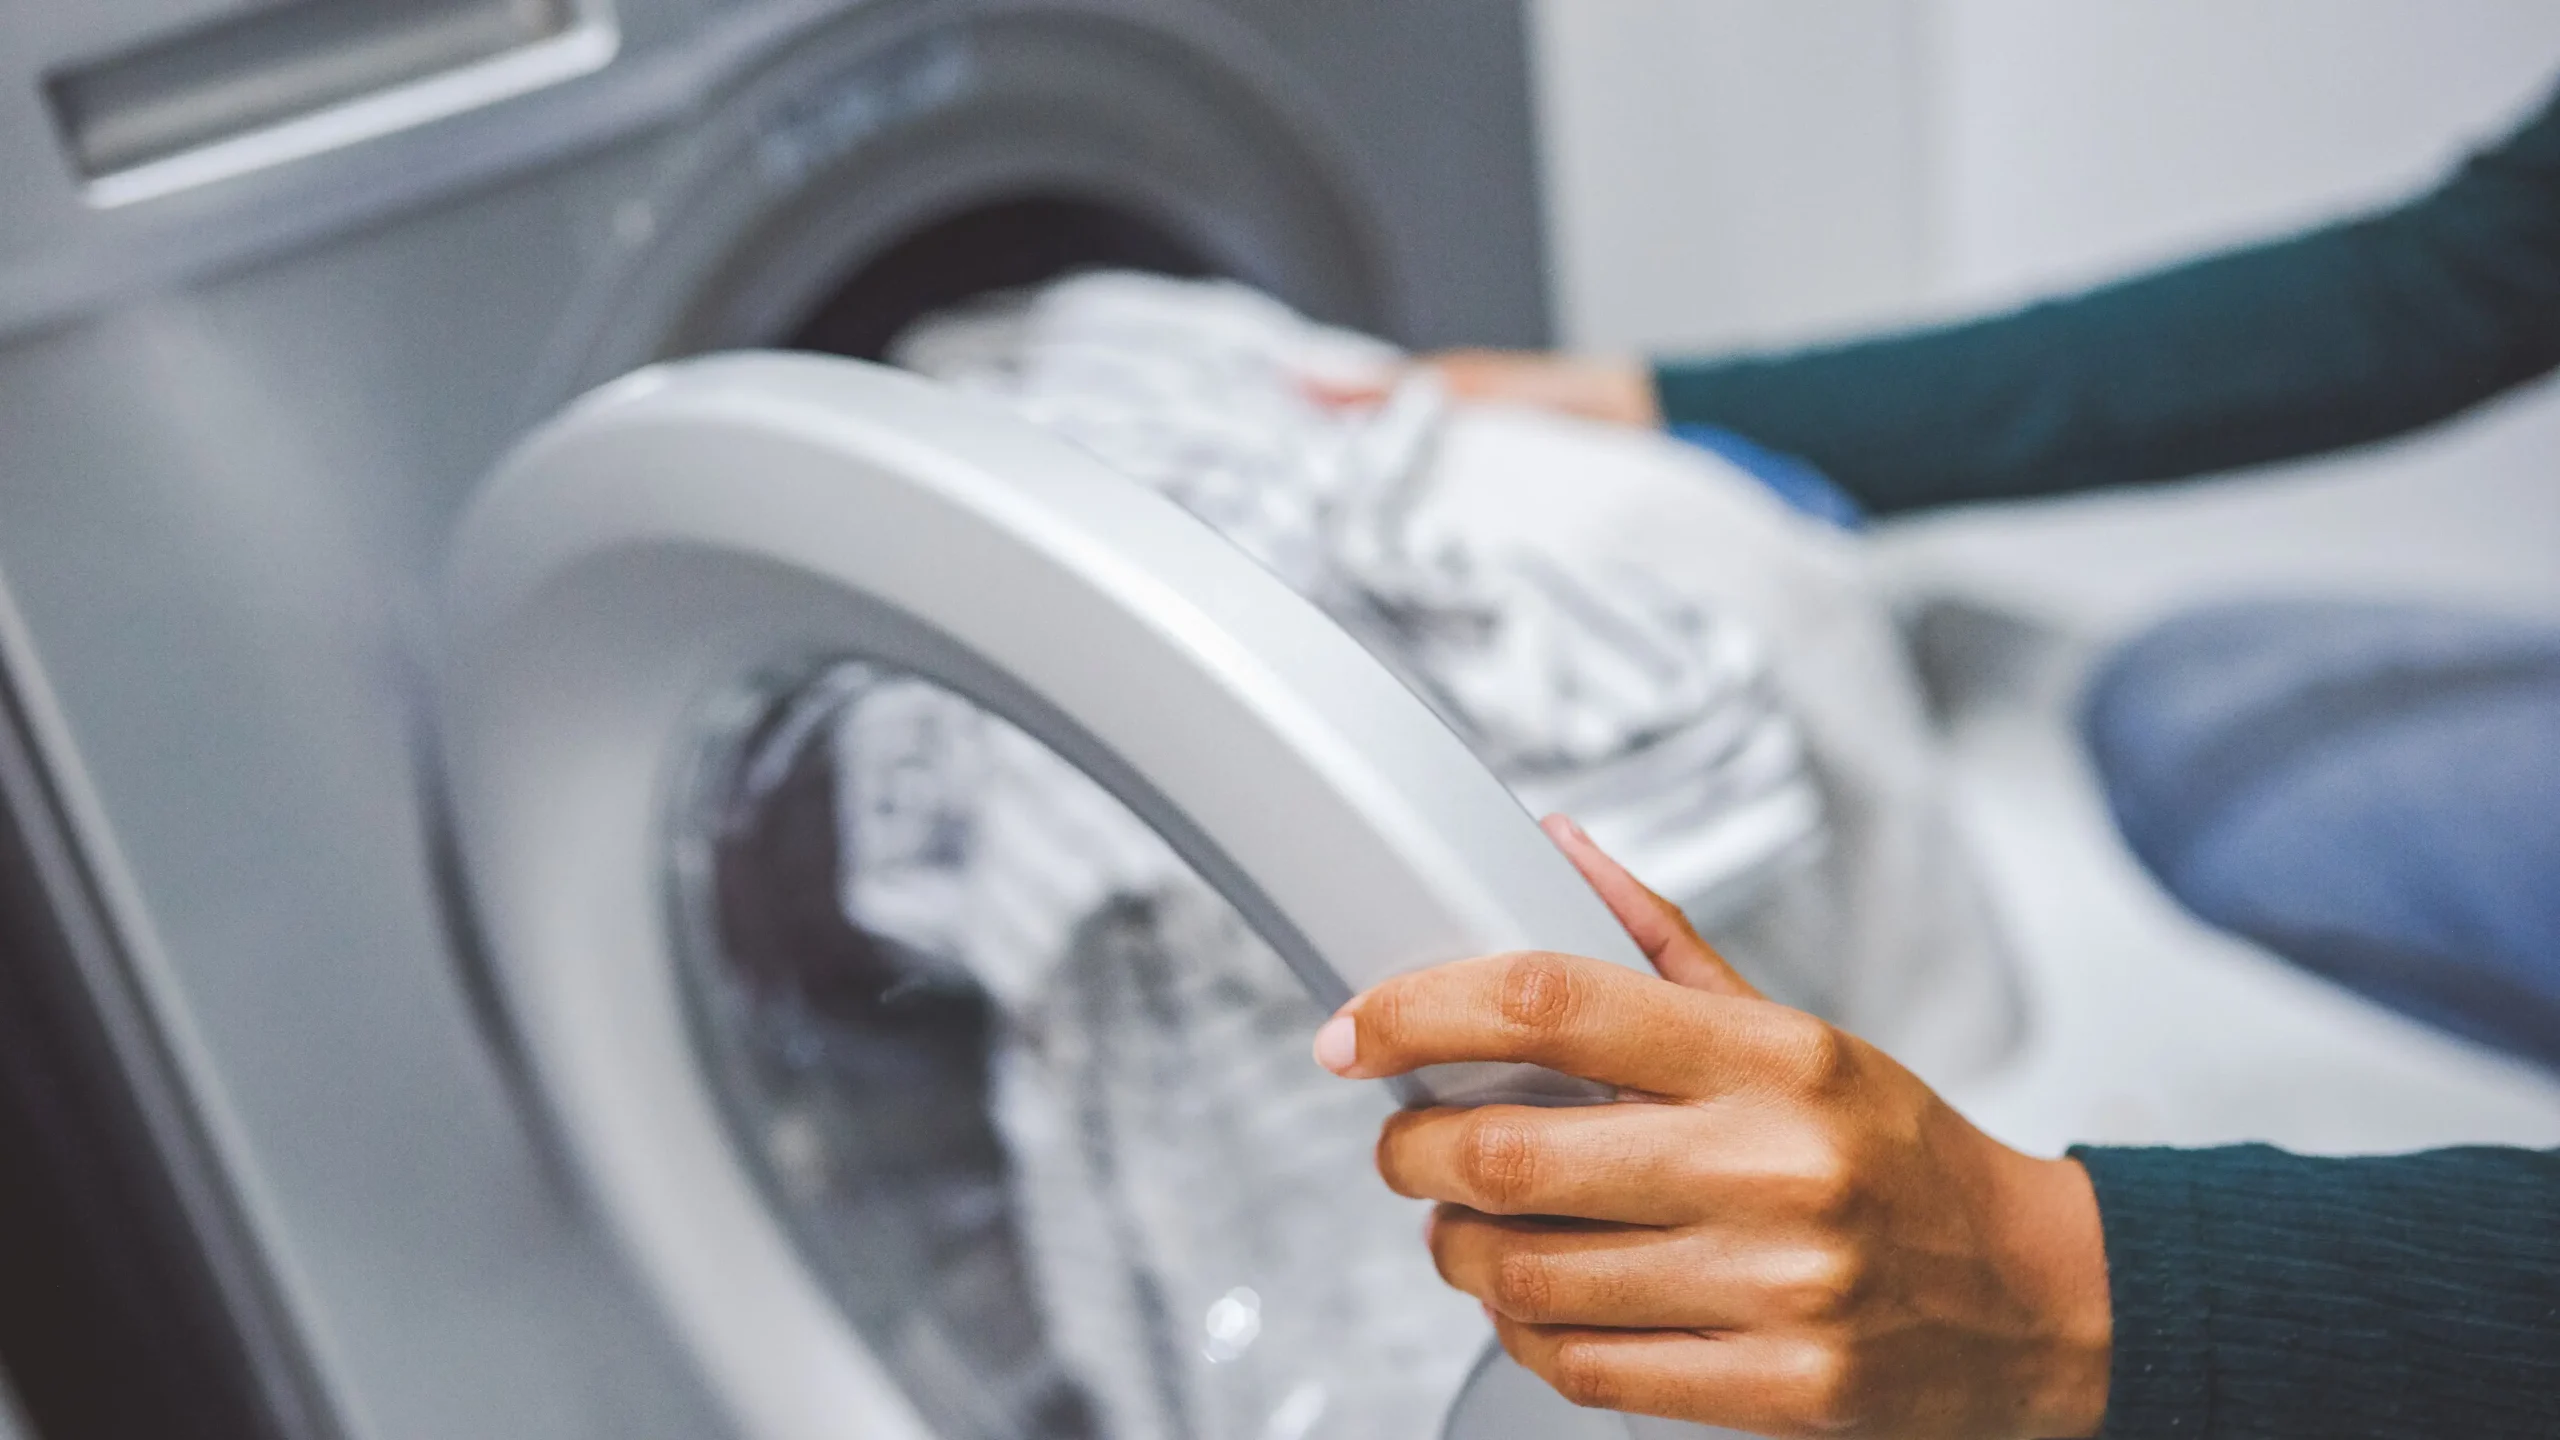 barcelona y la lavadora conflicto - Cuál es el impacto ambiental de la lavadora